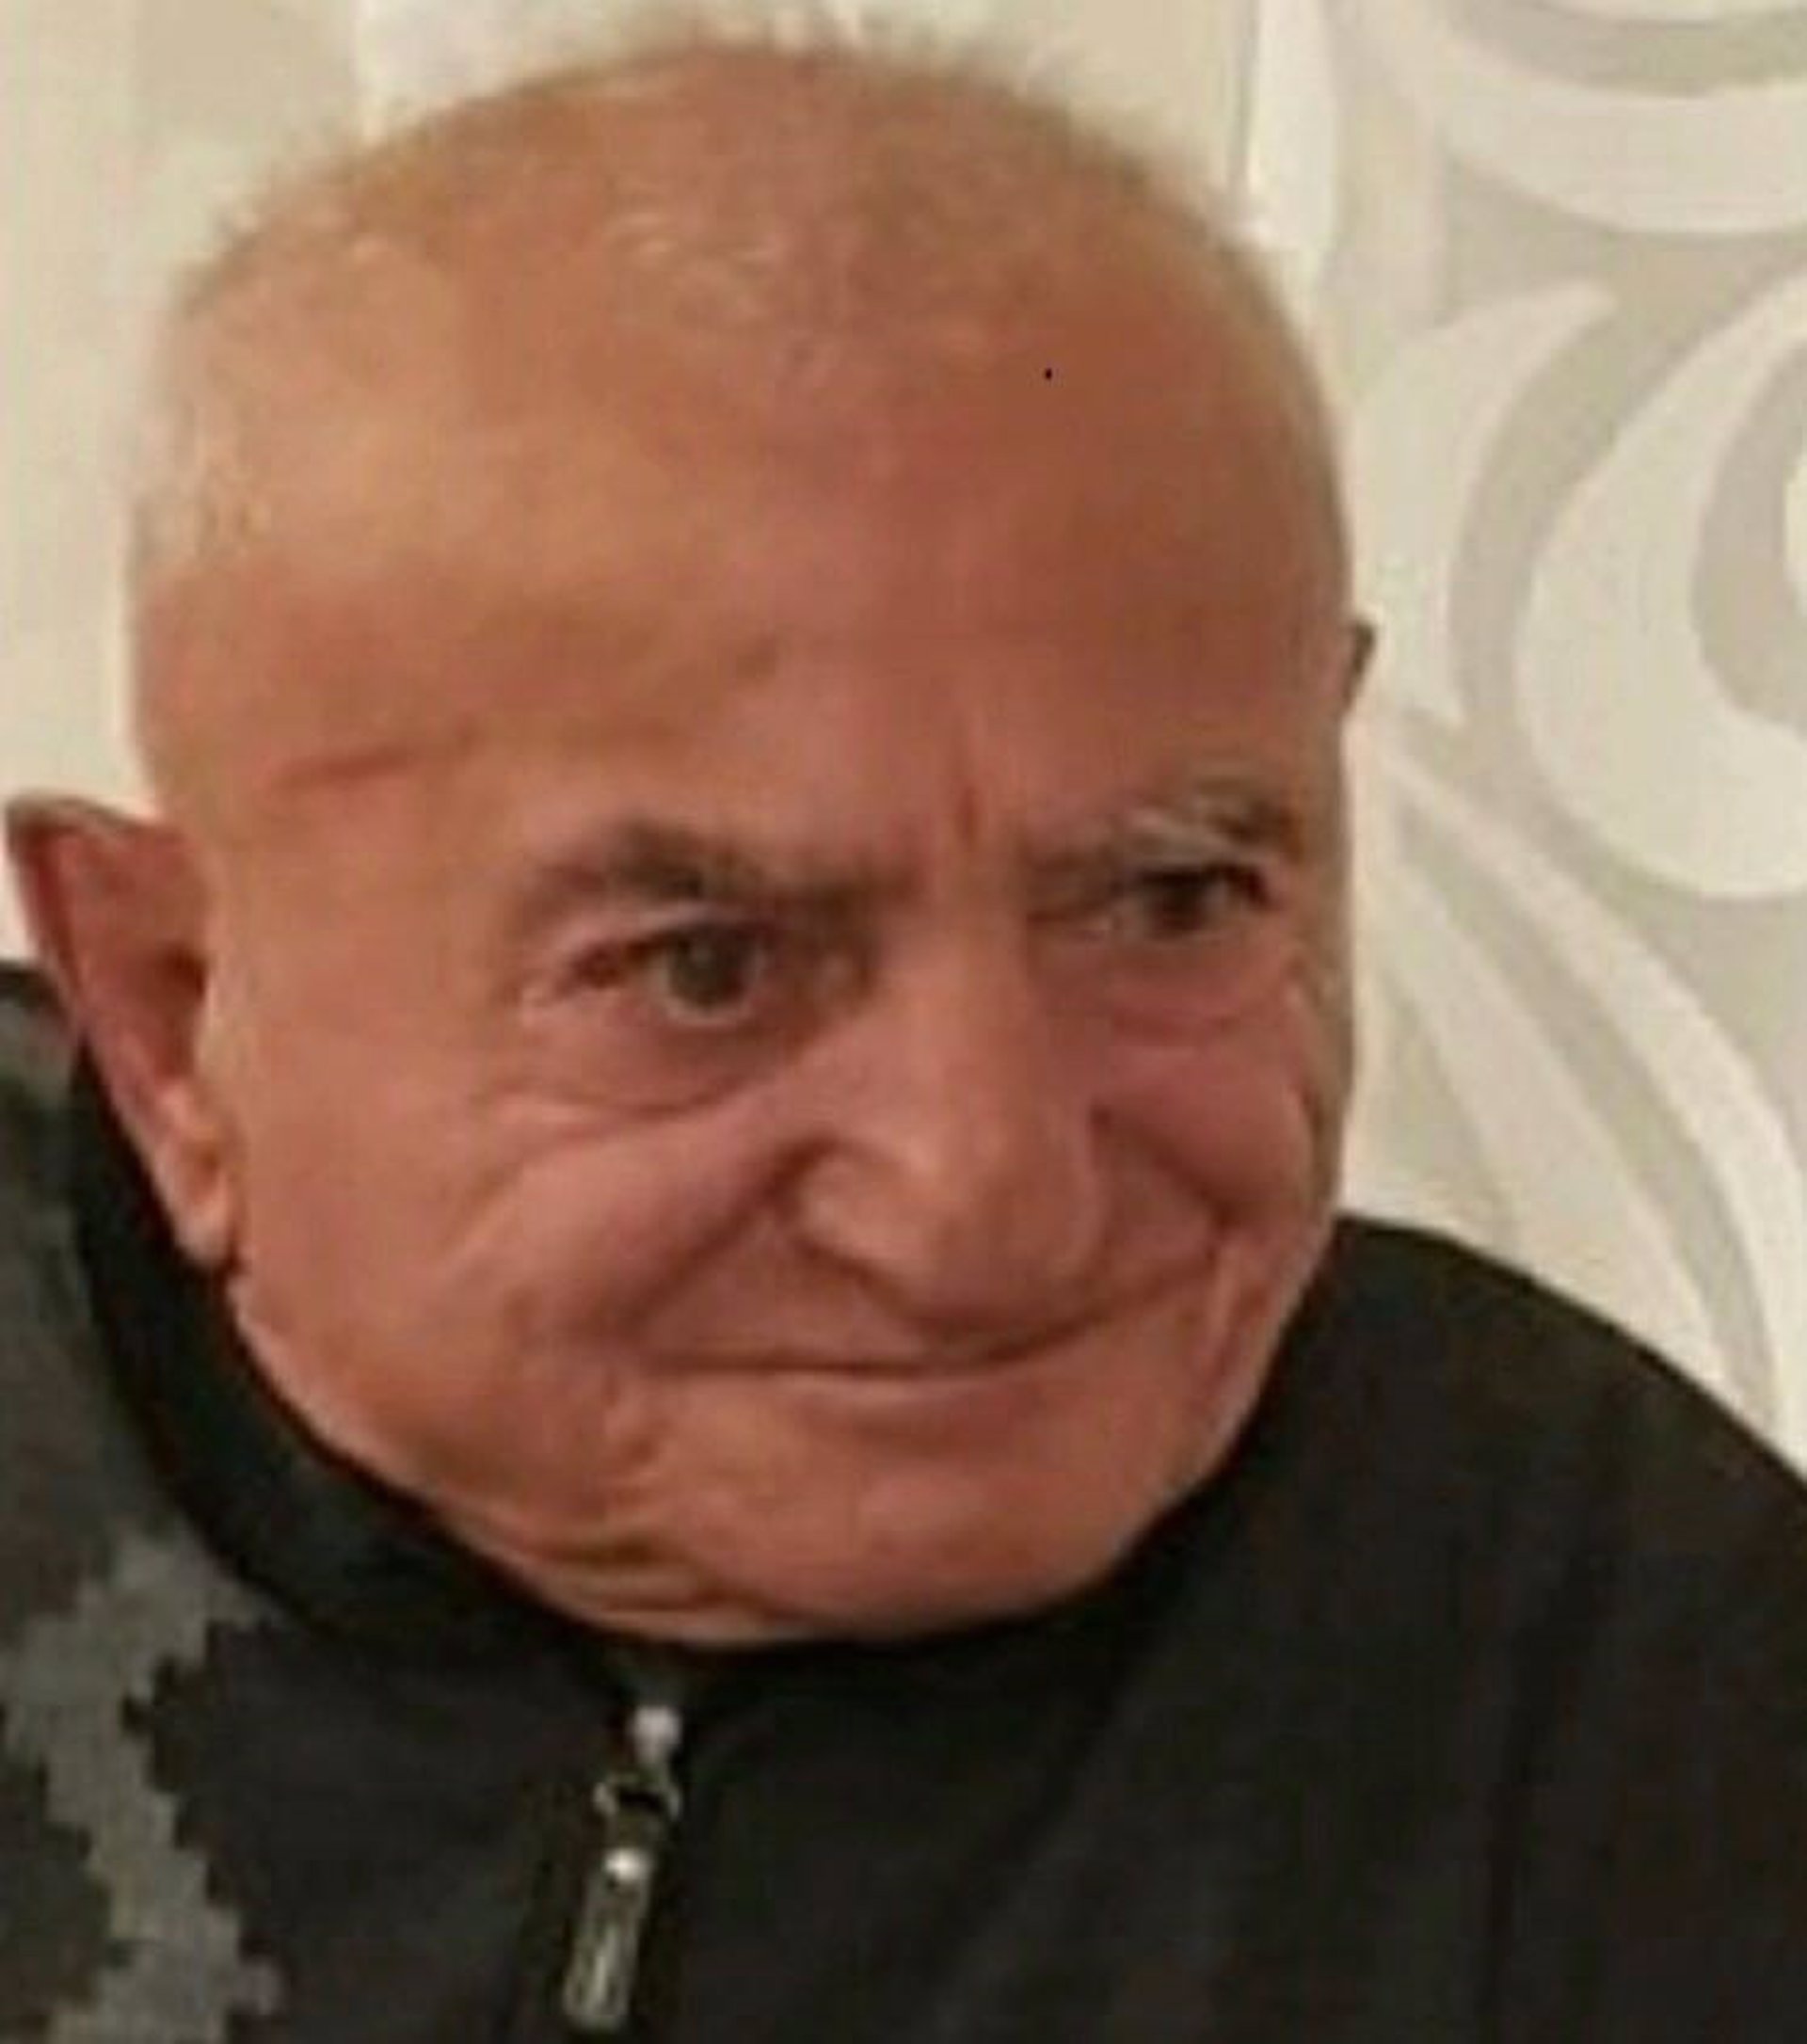 Localizado en buen estado el hombre de 82 años desaparecido en Sant Antoni